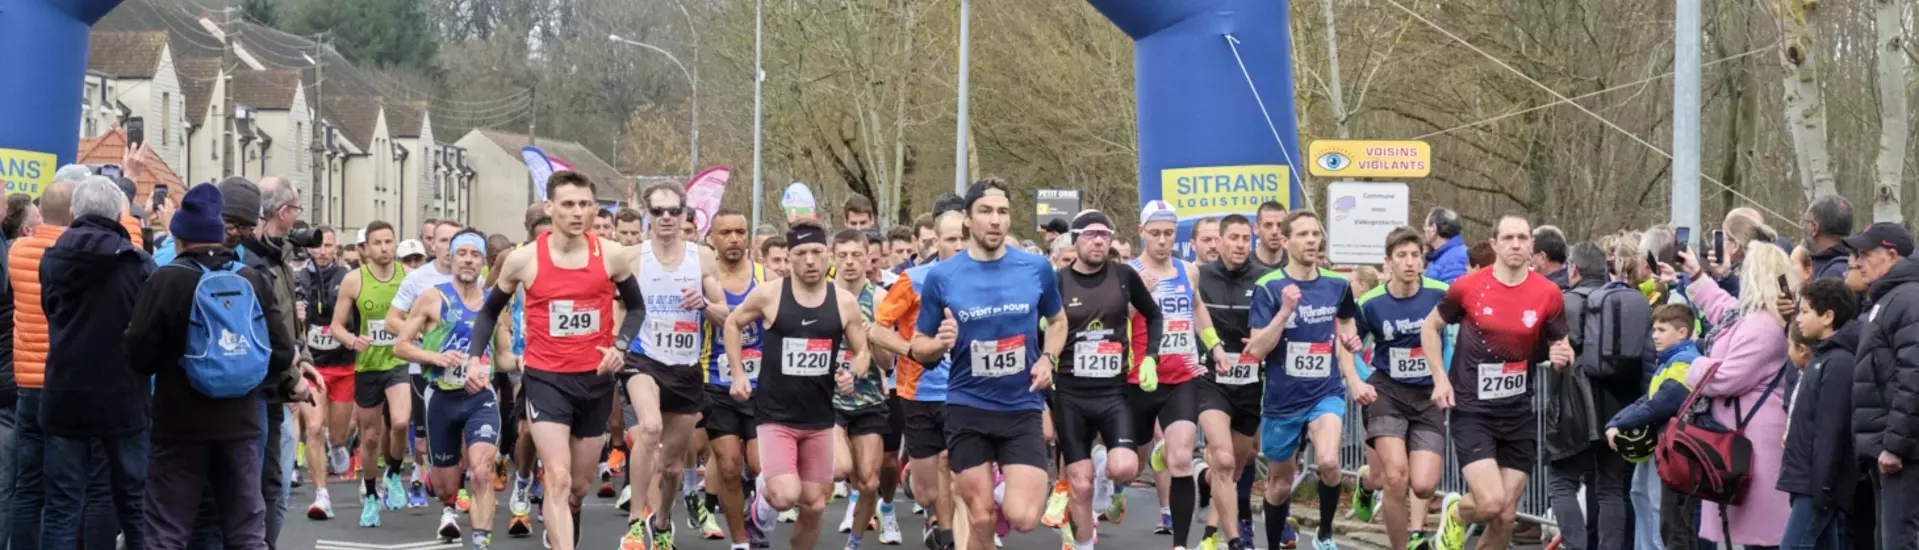 Semi-Marathon de Chartres Sitrans